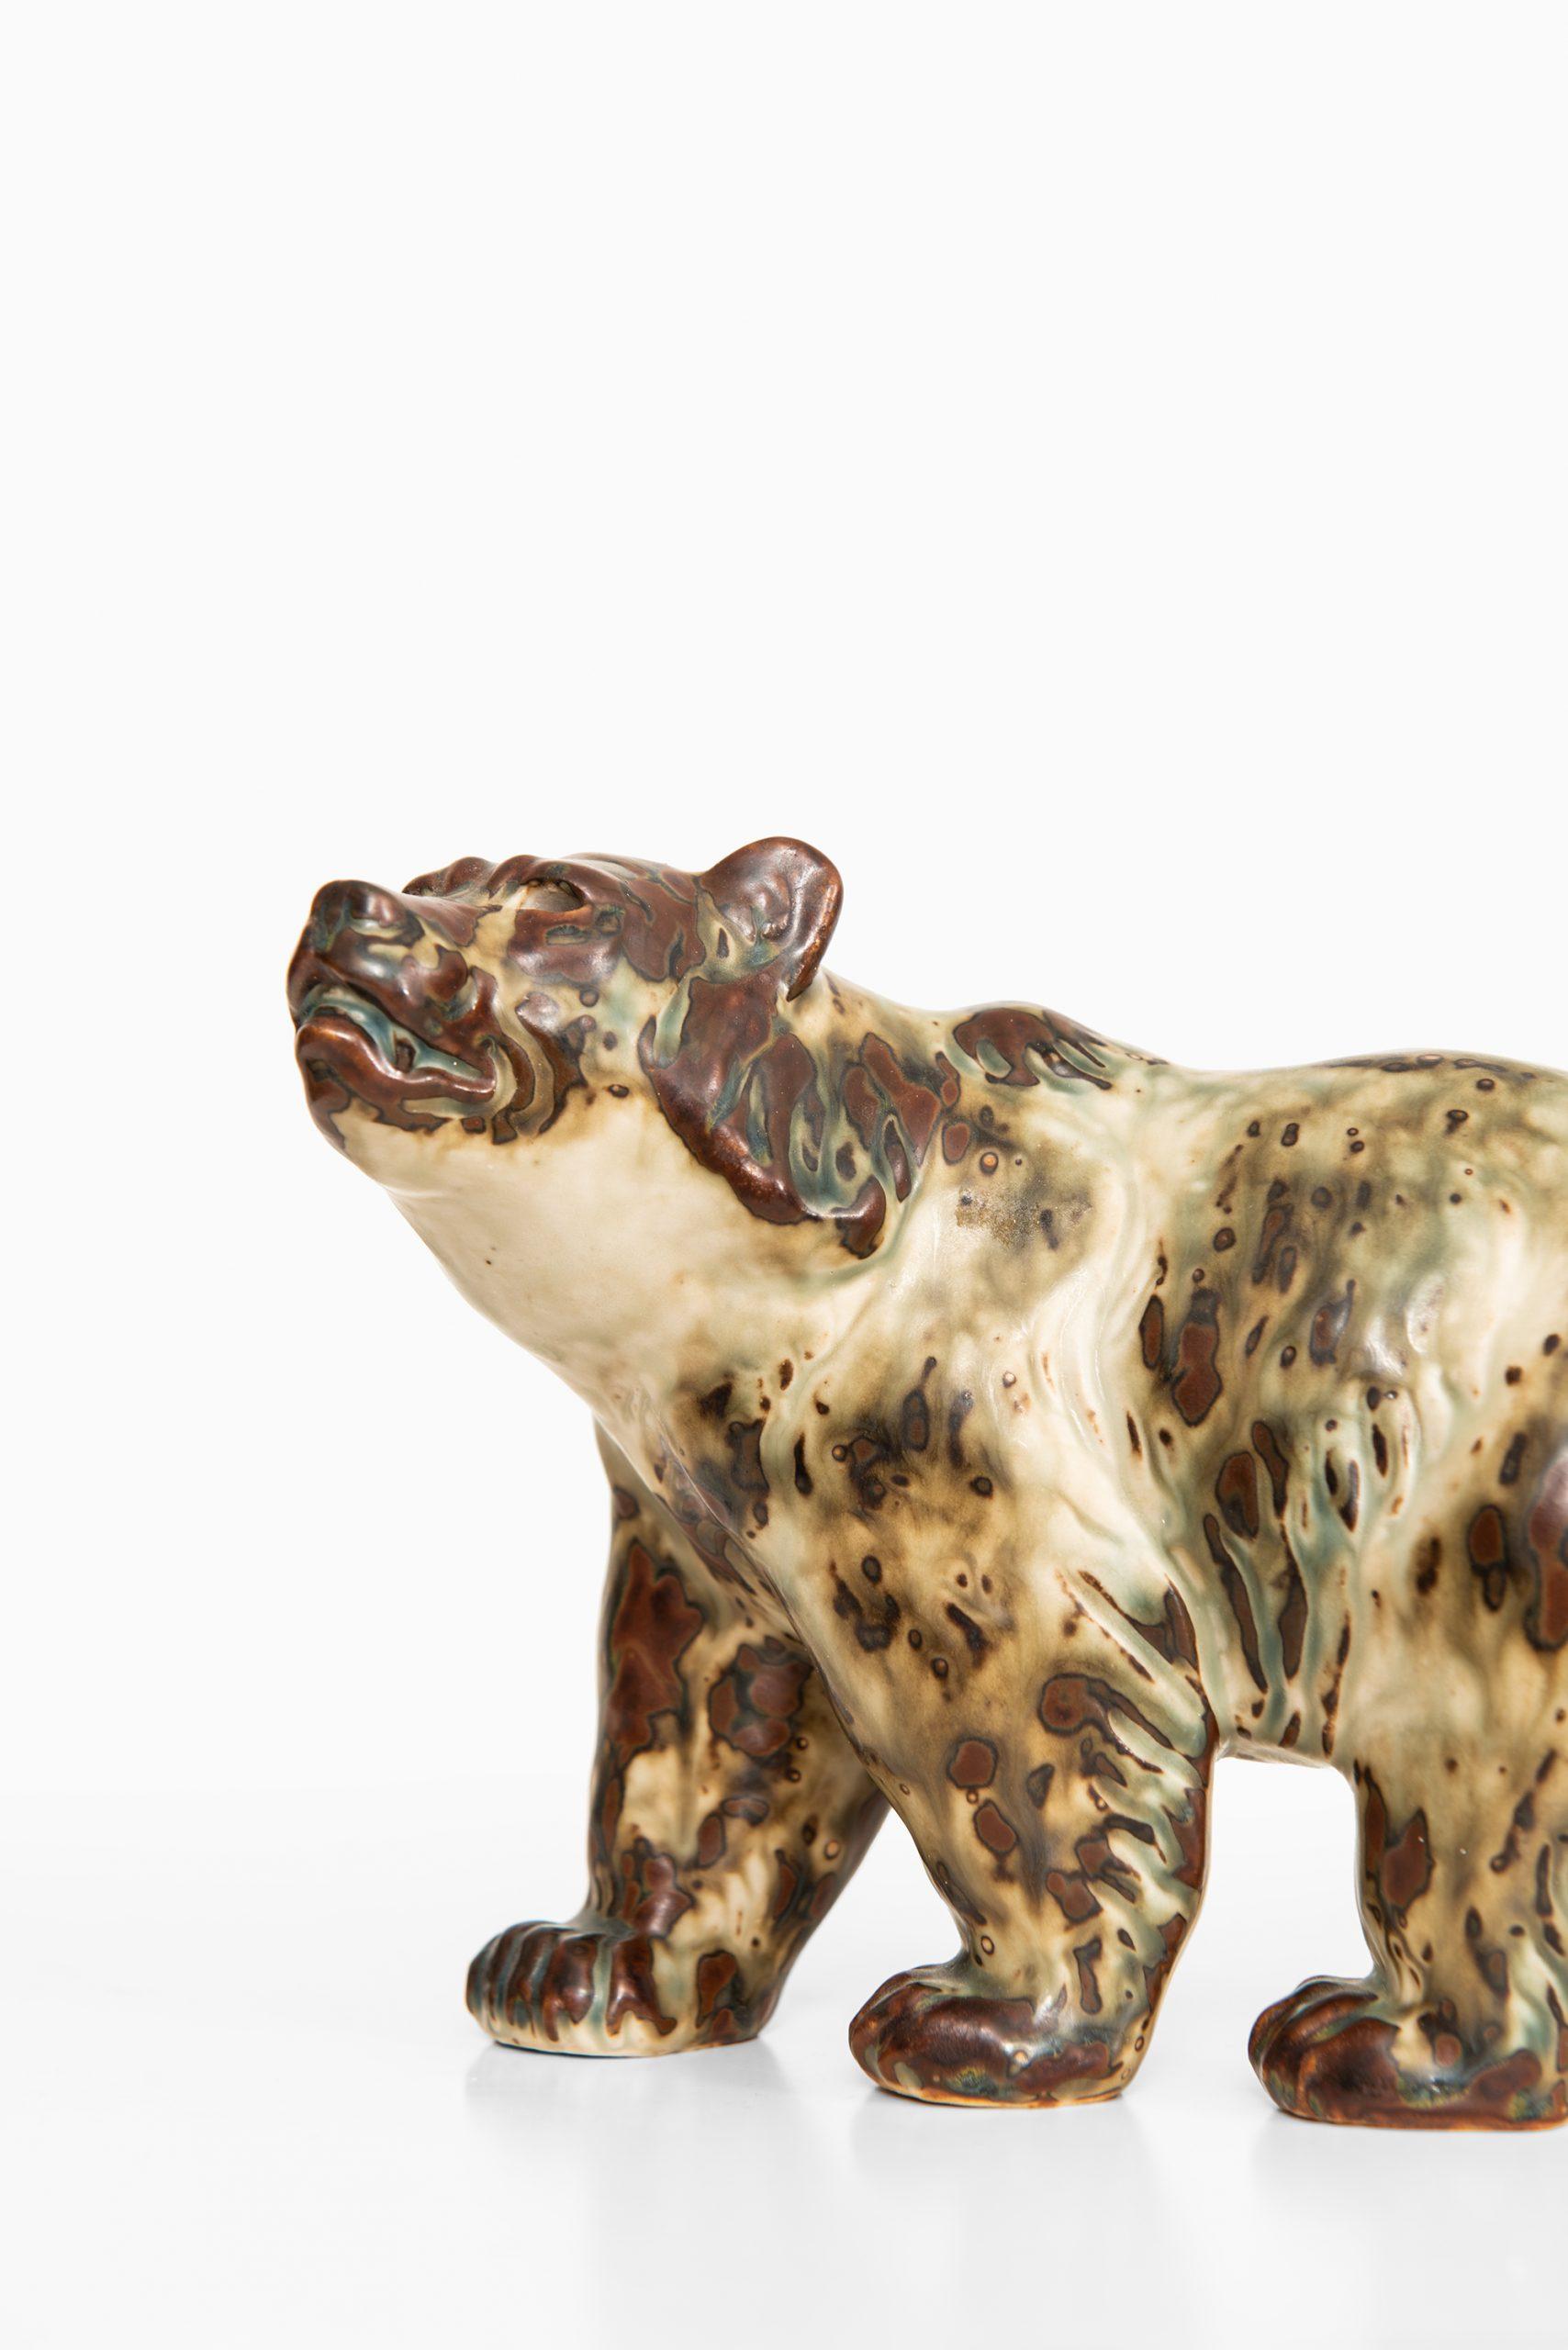 Ceramic bear nr 20155 designed by Knud Kyhn. Produced by Royal Copenhagen in Denmark.